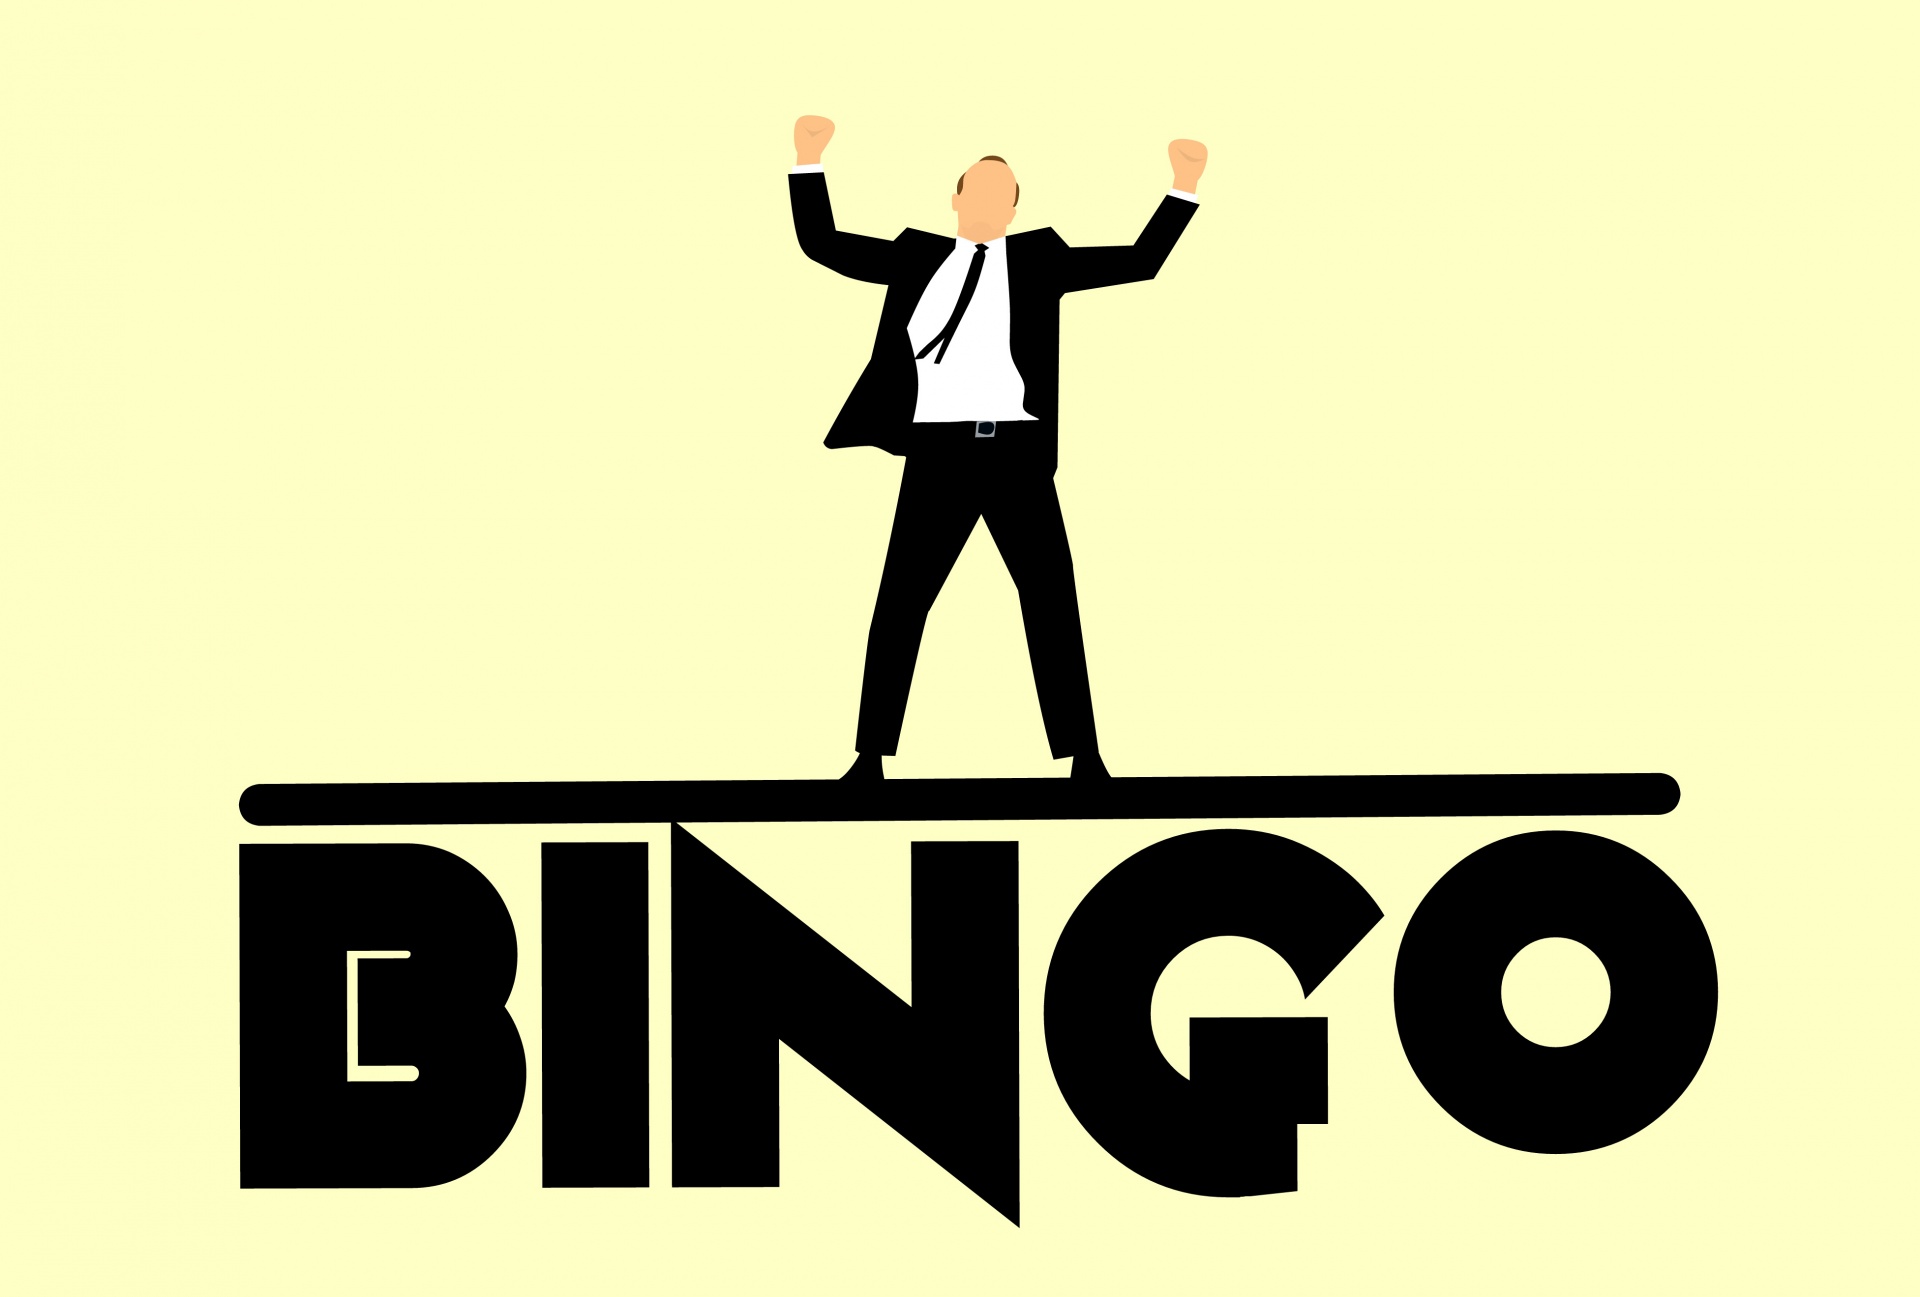 gratis bingo online